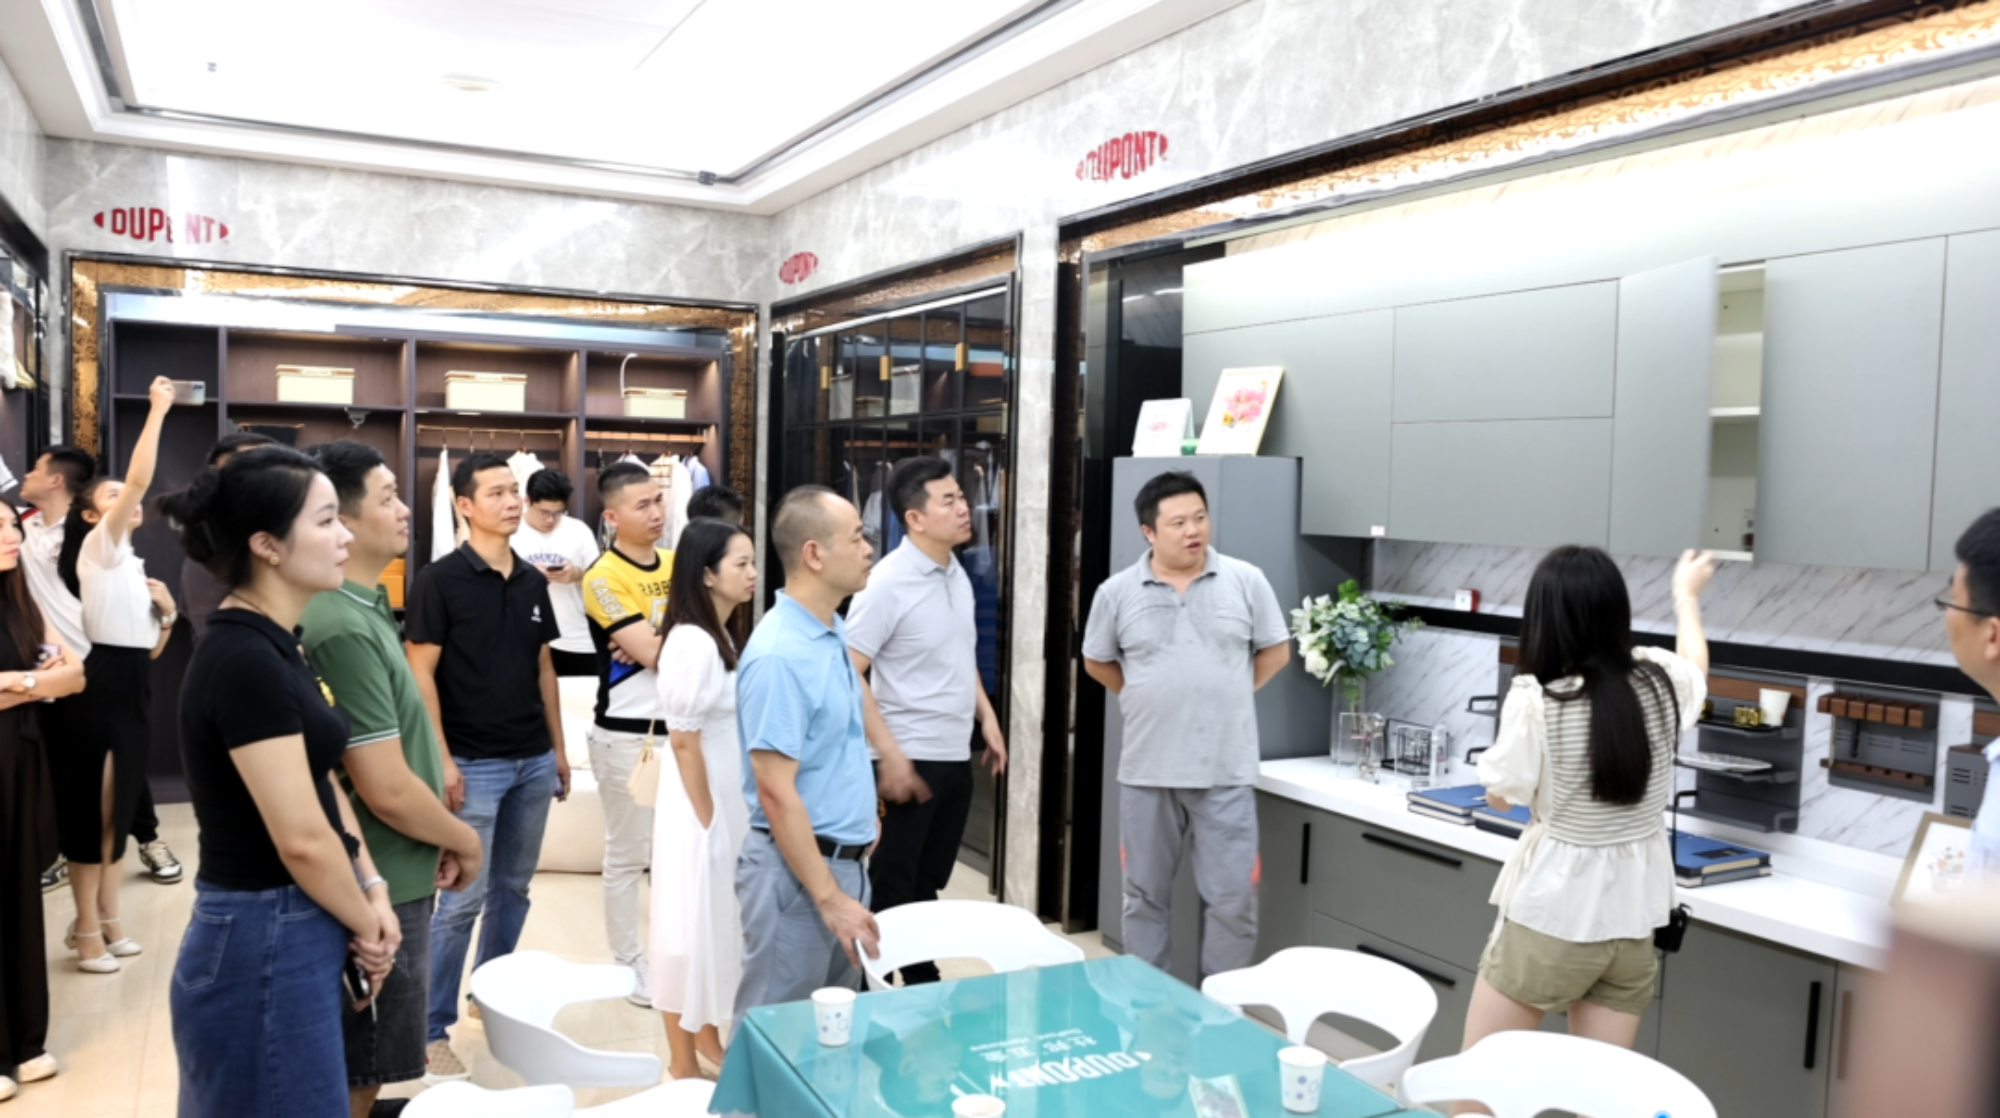 ROEASY Riistvara teave | Tere tulemast Guangdongi kodu ehitusmaterjalide kaubanduskoja noortekomitee kontrolli- ja vahetusmeeskond meie ettevõttesse külastuseks ja vahetuseks